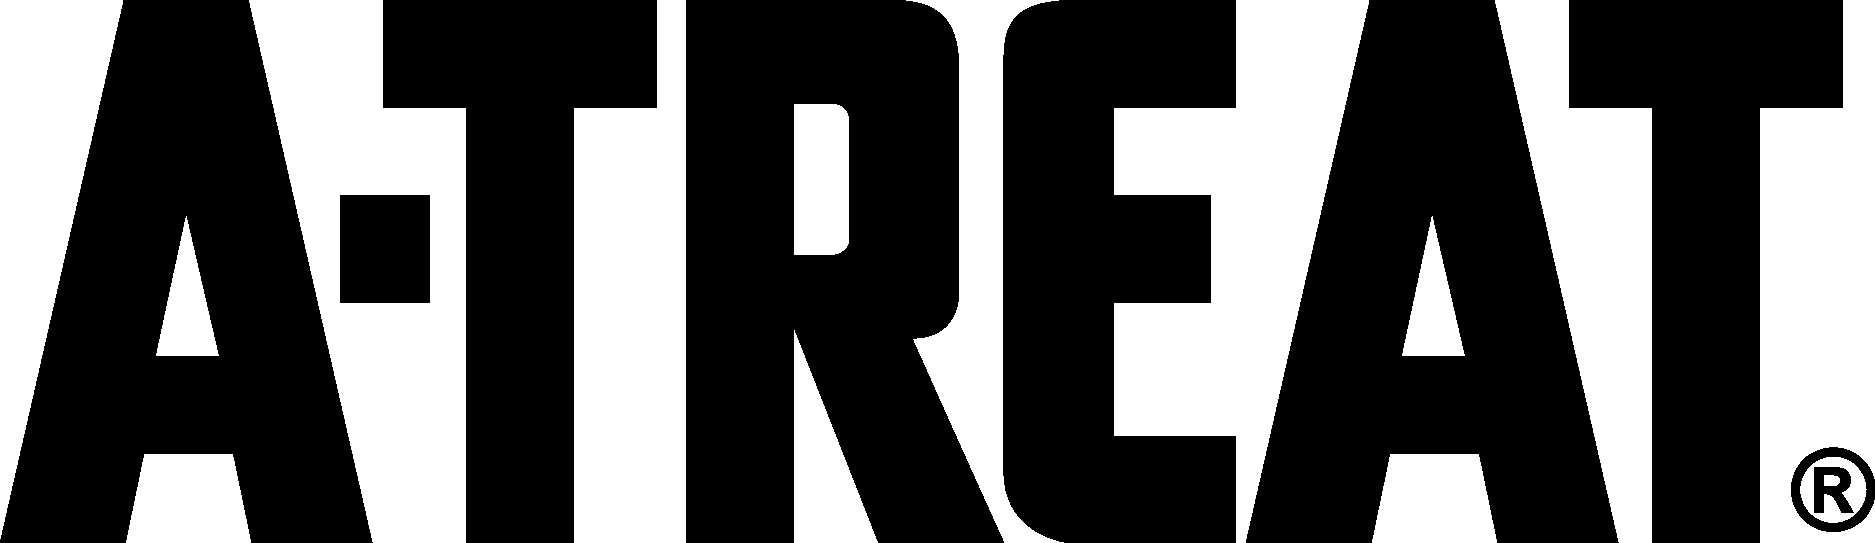 A TREAT Logo Vector